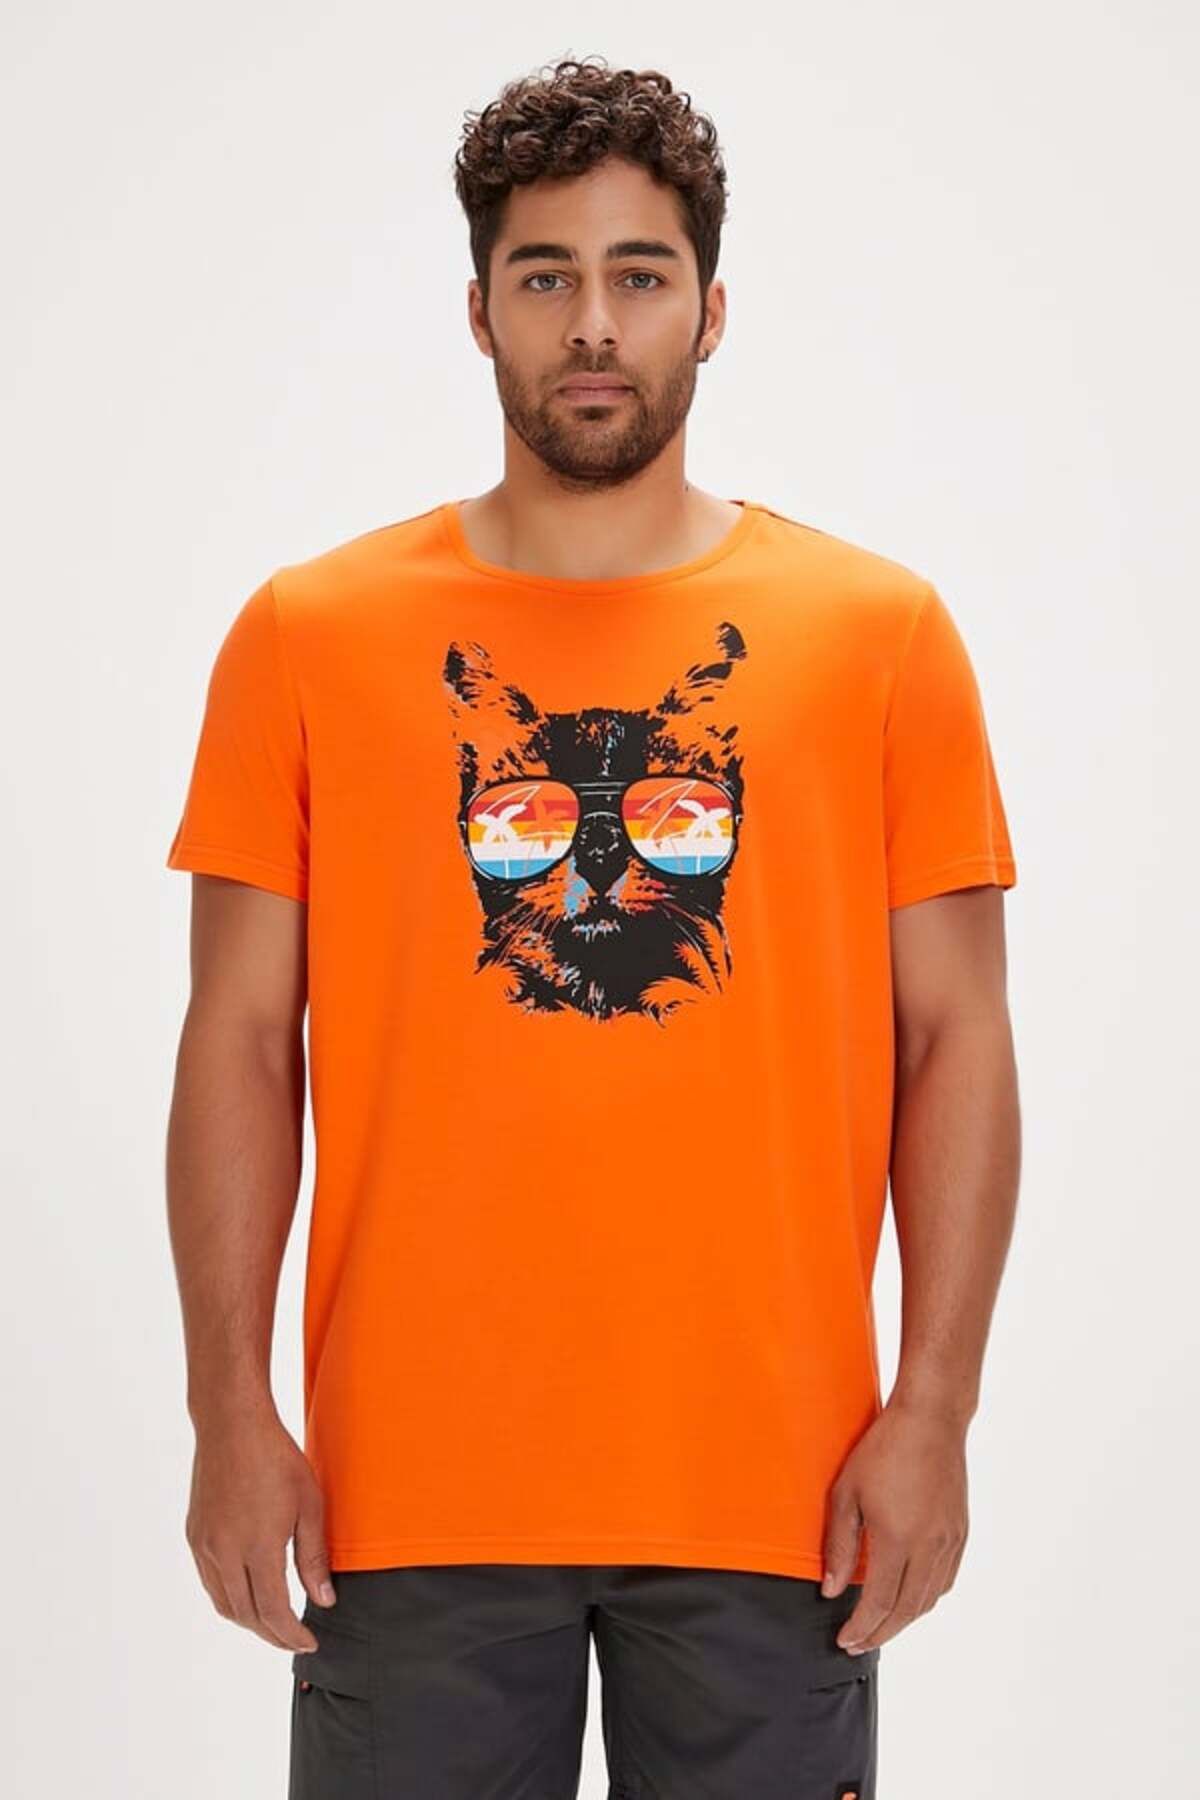 Bad Bear 24.01.07.011 Manx Erkek T-shirt Orange